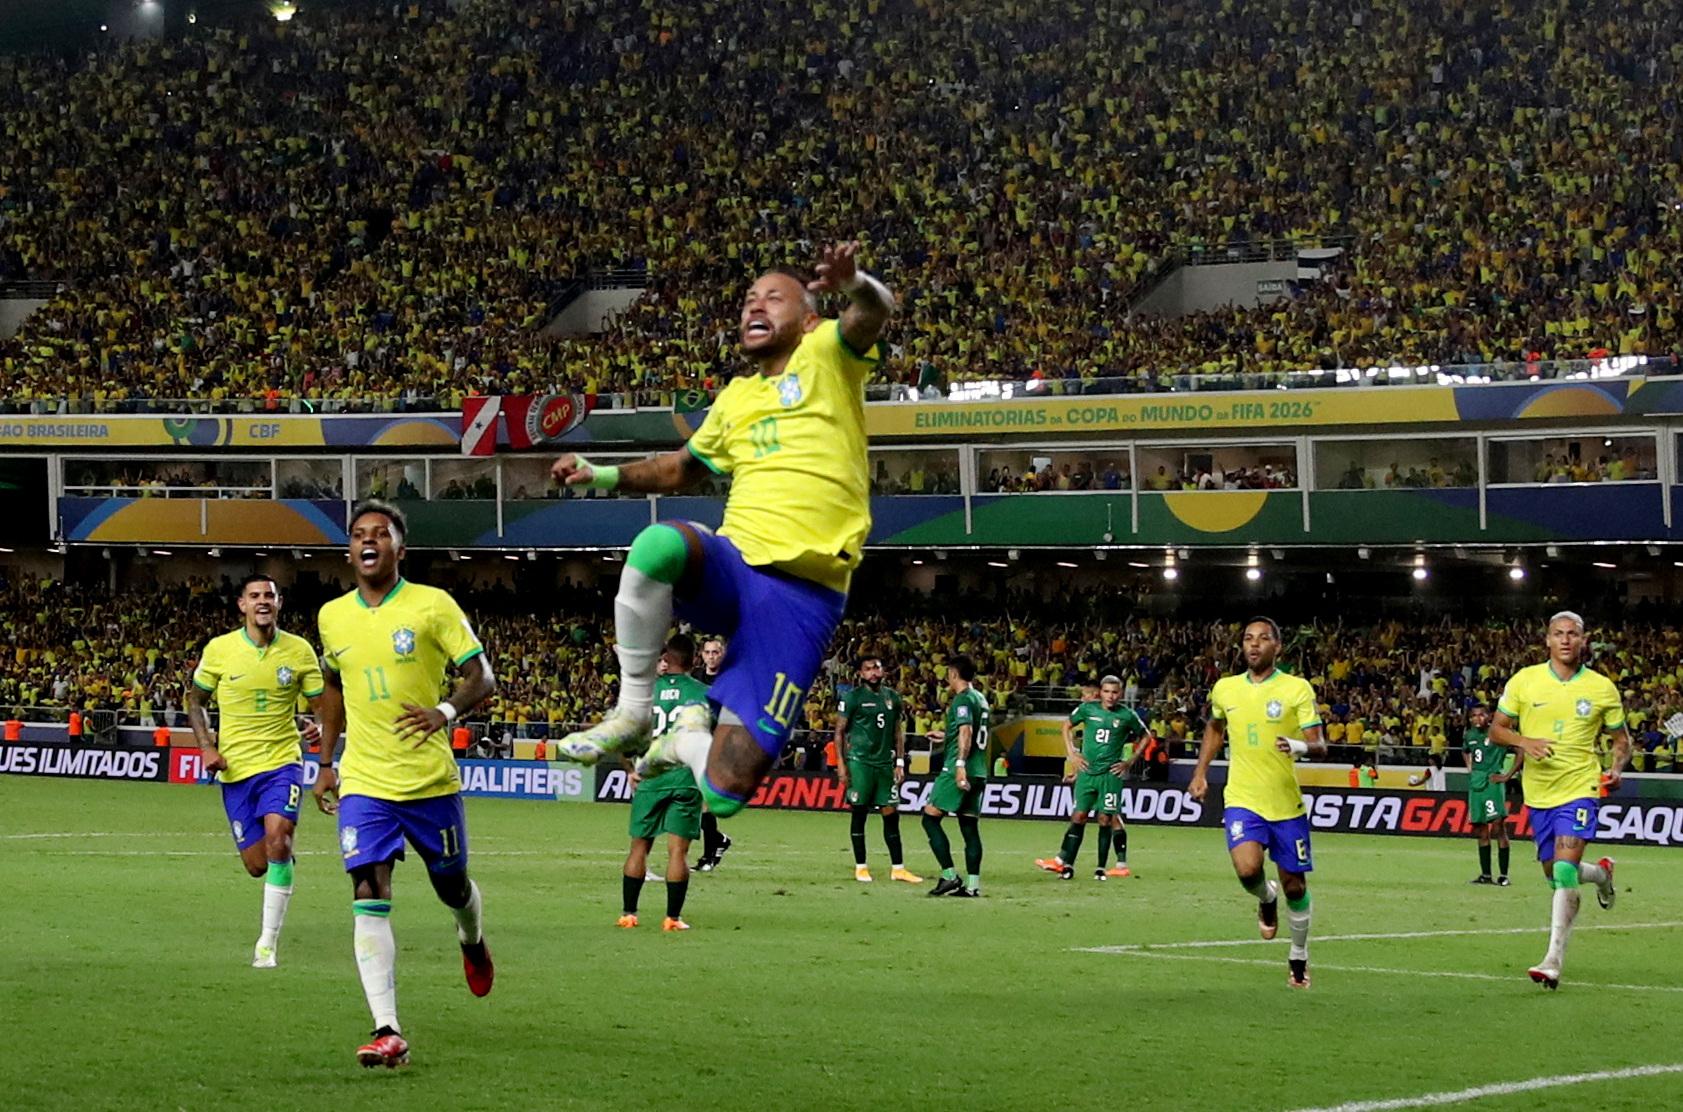 Brasil x Bolívia: saiba onde ver jogo das Eliminatórias da Copa do Mundo  2026